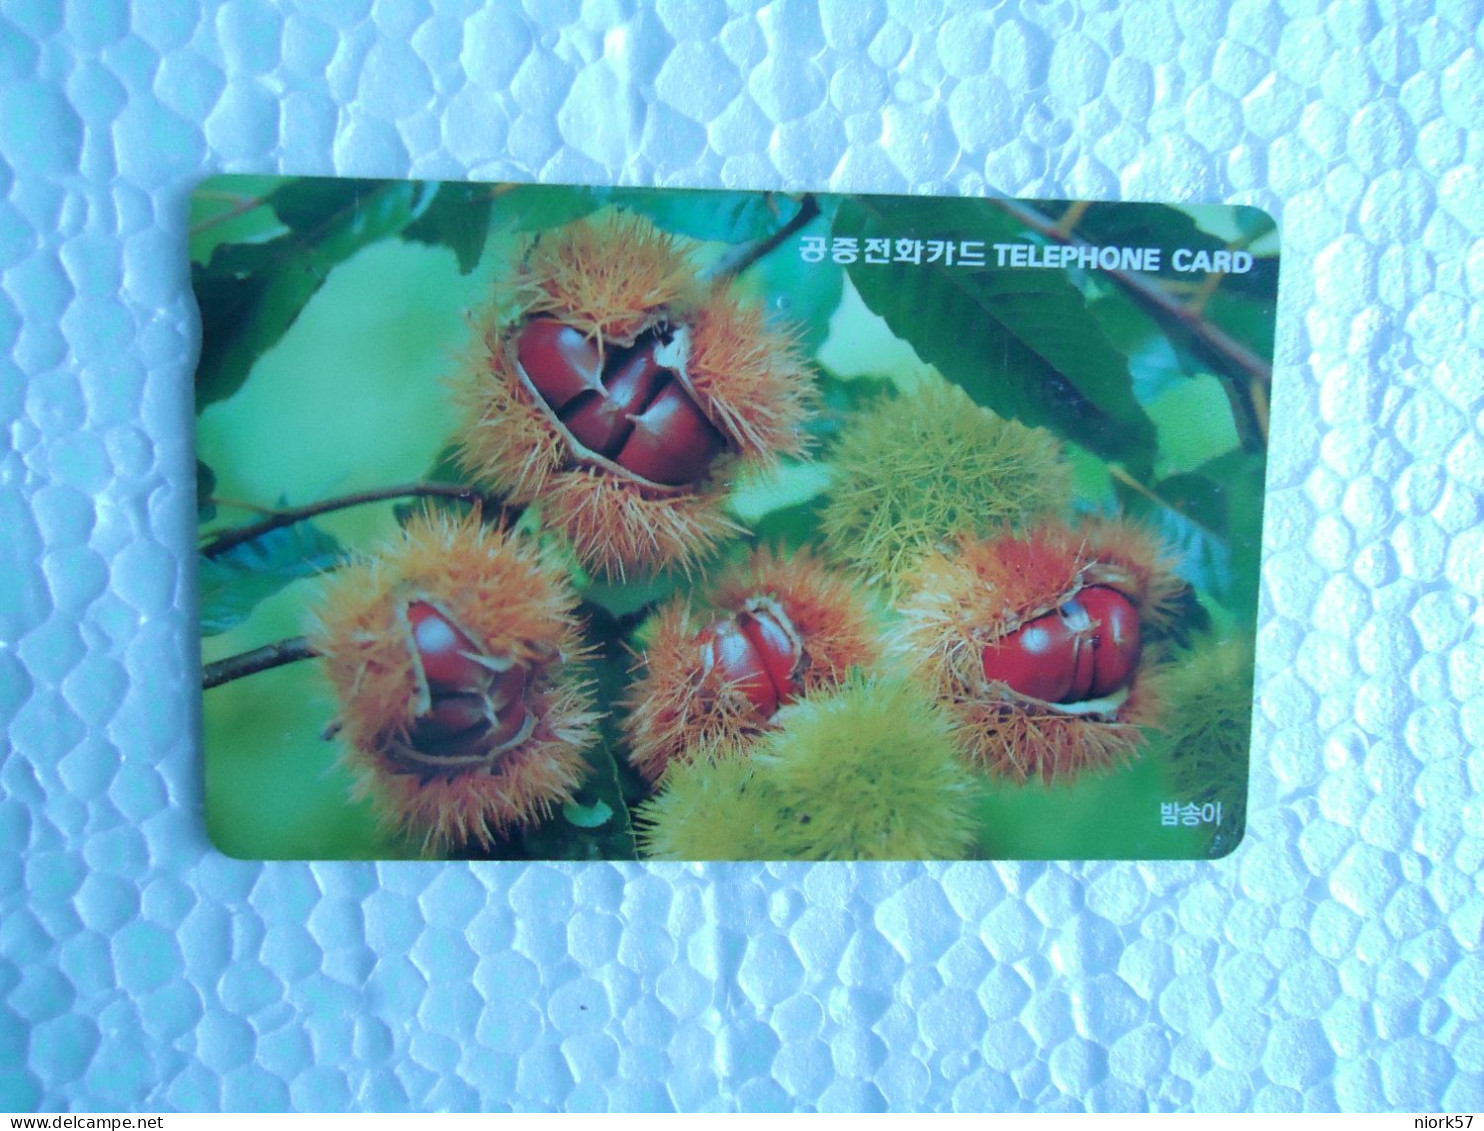 KOREA   USED CARDS  PLANTS FRUITS  UNITS 10,000 - Levensmiddelen